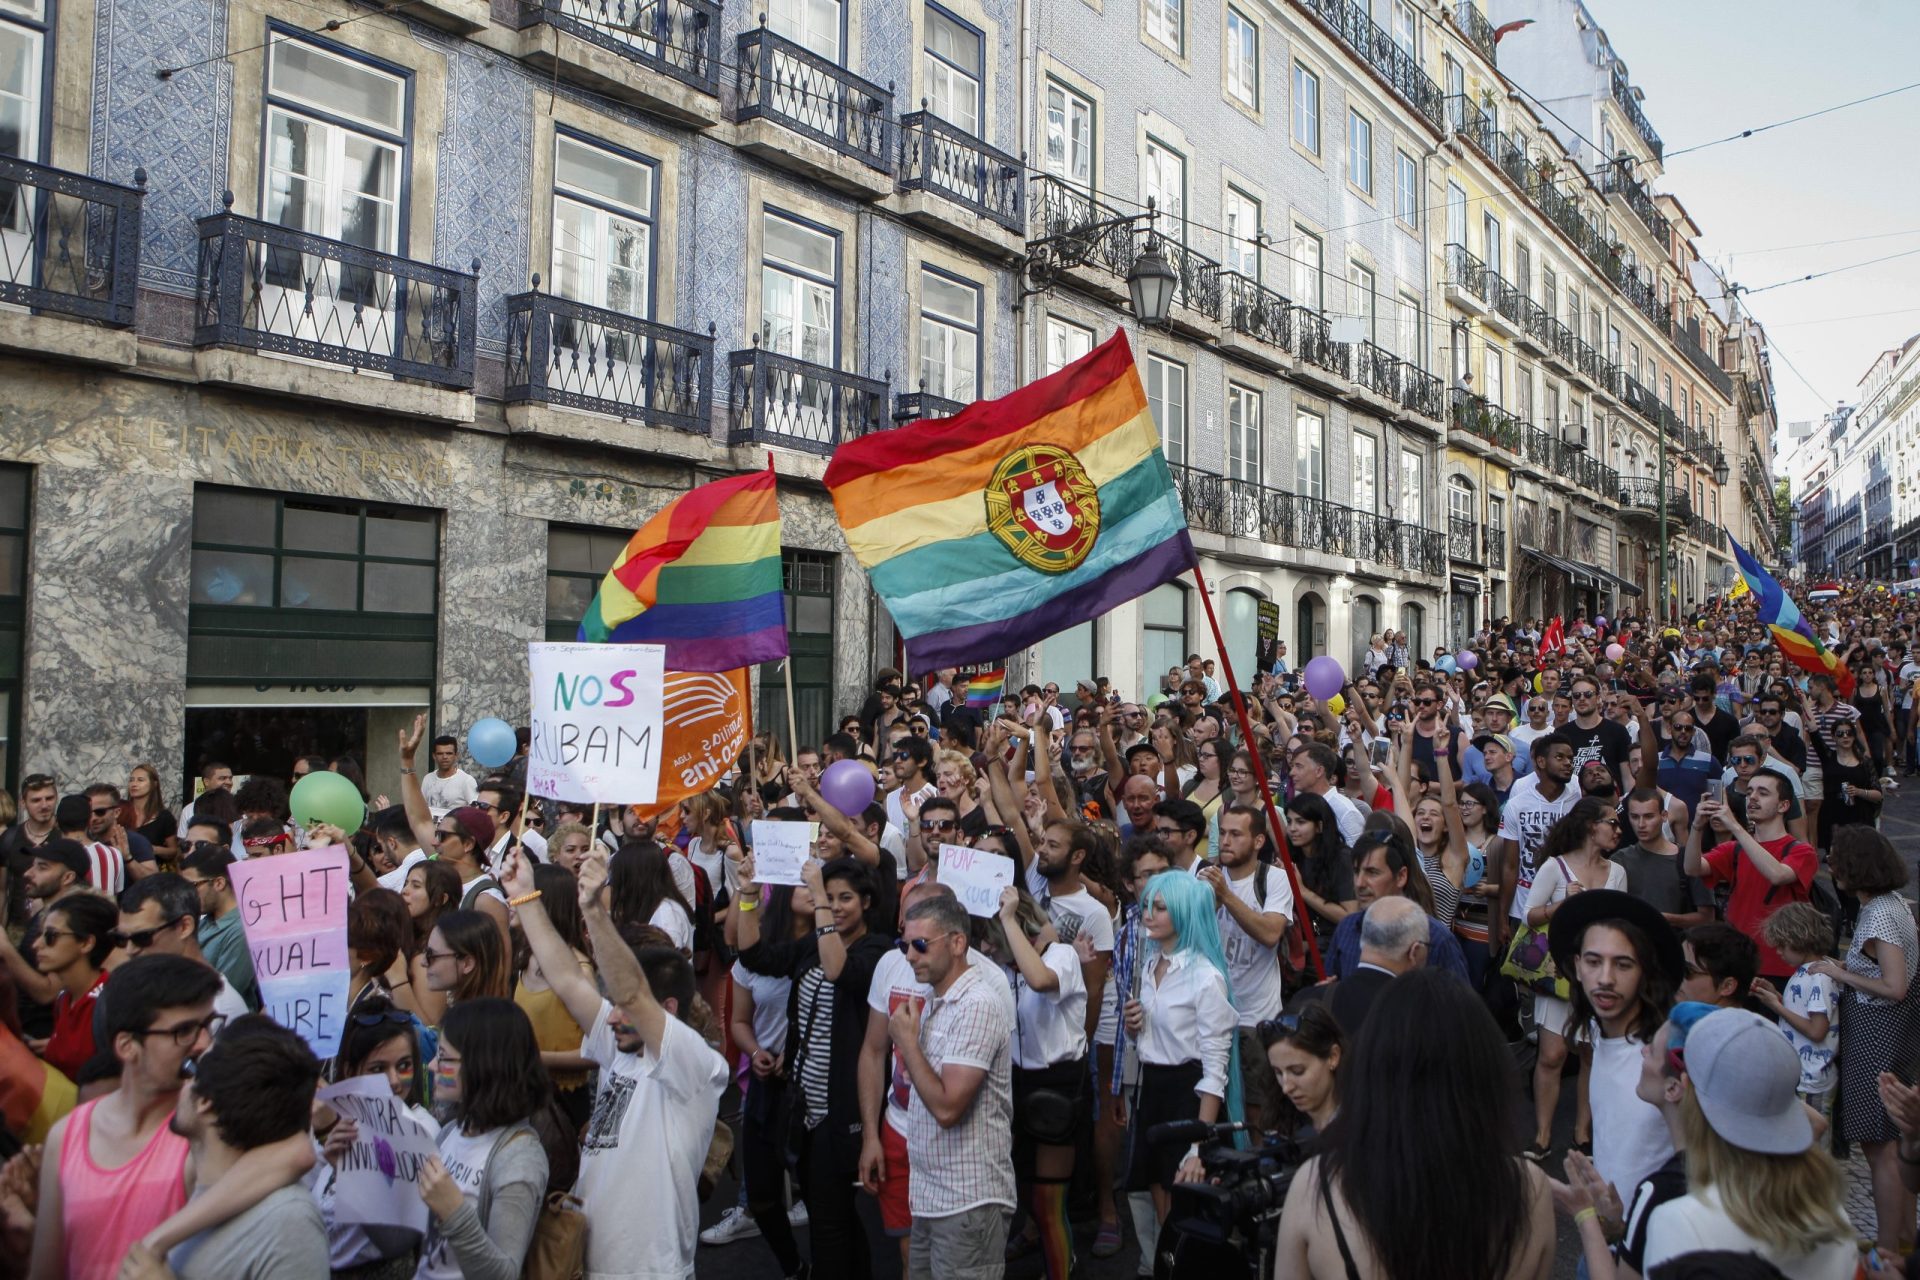 “Celebrar as diferenças, transcender o género” lema de marcha gay em Lisboa